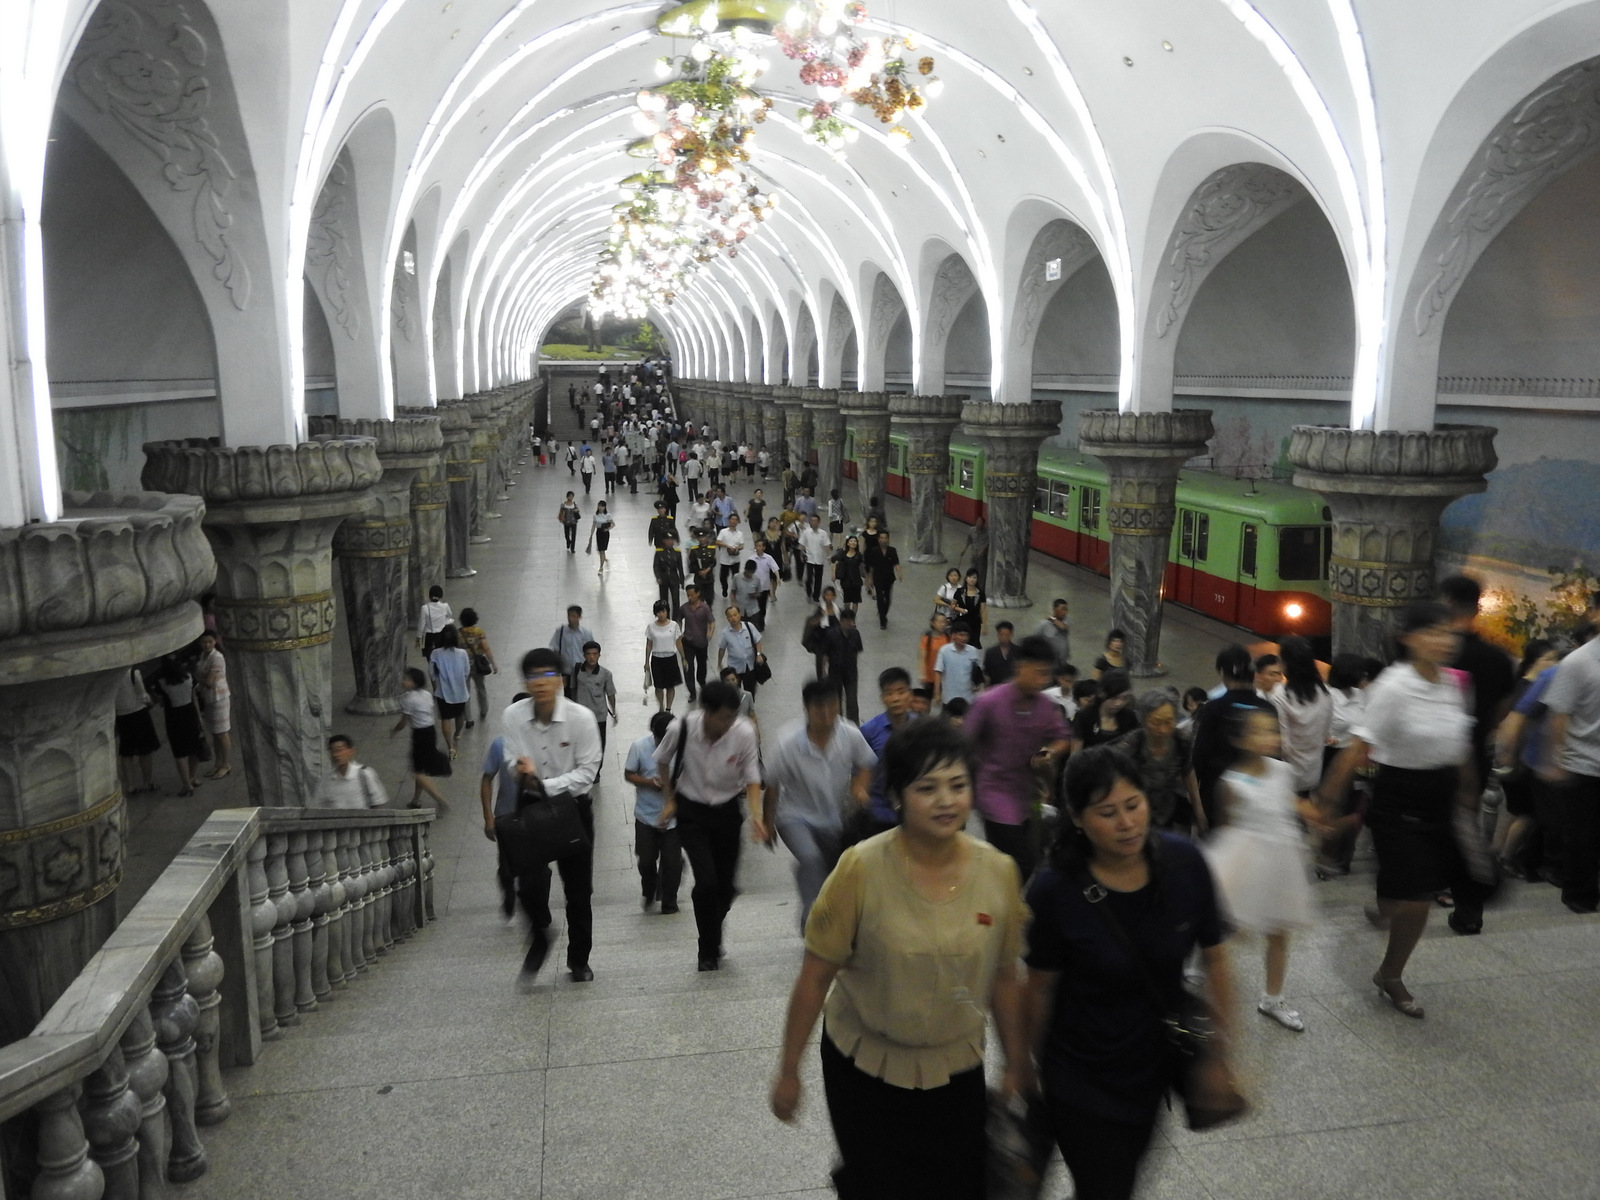 Κεντρικός σταθμός του μετρό της Πιονγιάνγκ, το οποίο διακρίνεται για την απλότητα του, την όμορφη αισθητική, με έντονη την παρουσία του μάρμαρου και των τοιχογραφιών. 